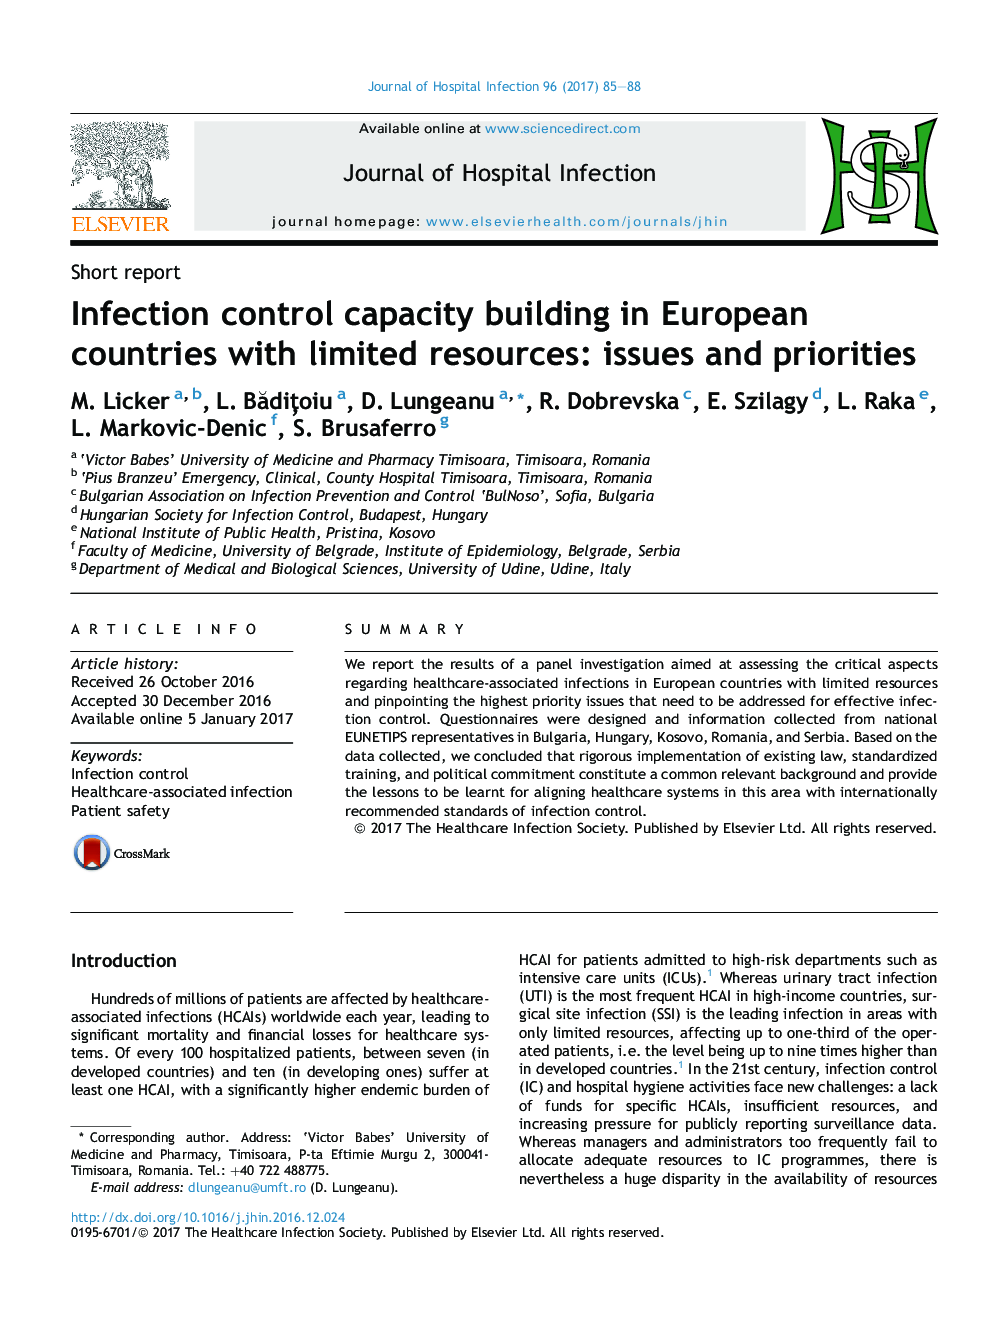 ظرفیت کنترل عفونت در کشورهای اروپایی با منابع محدود: مسائل و اولویت ها 